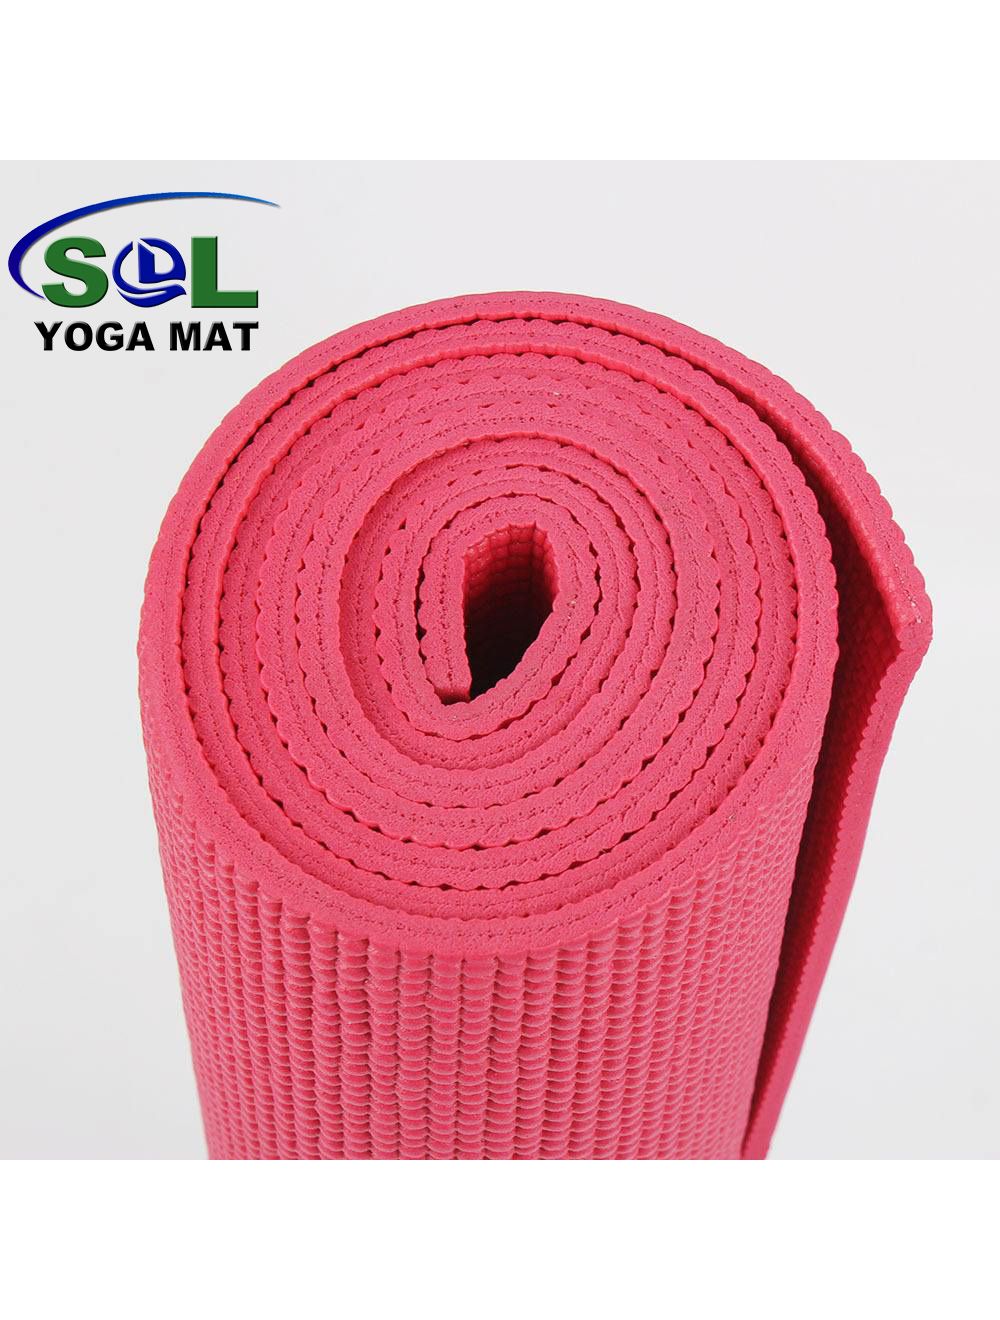 4mm Non- slip beginner suitable PVC Yoga mat